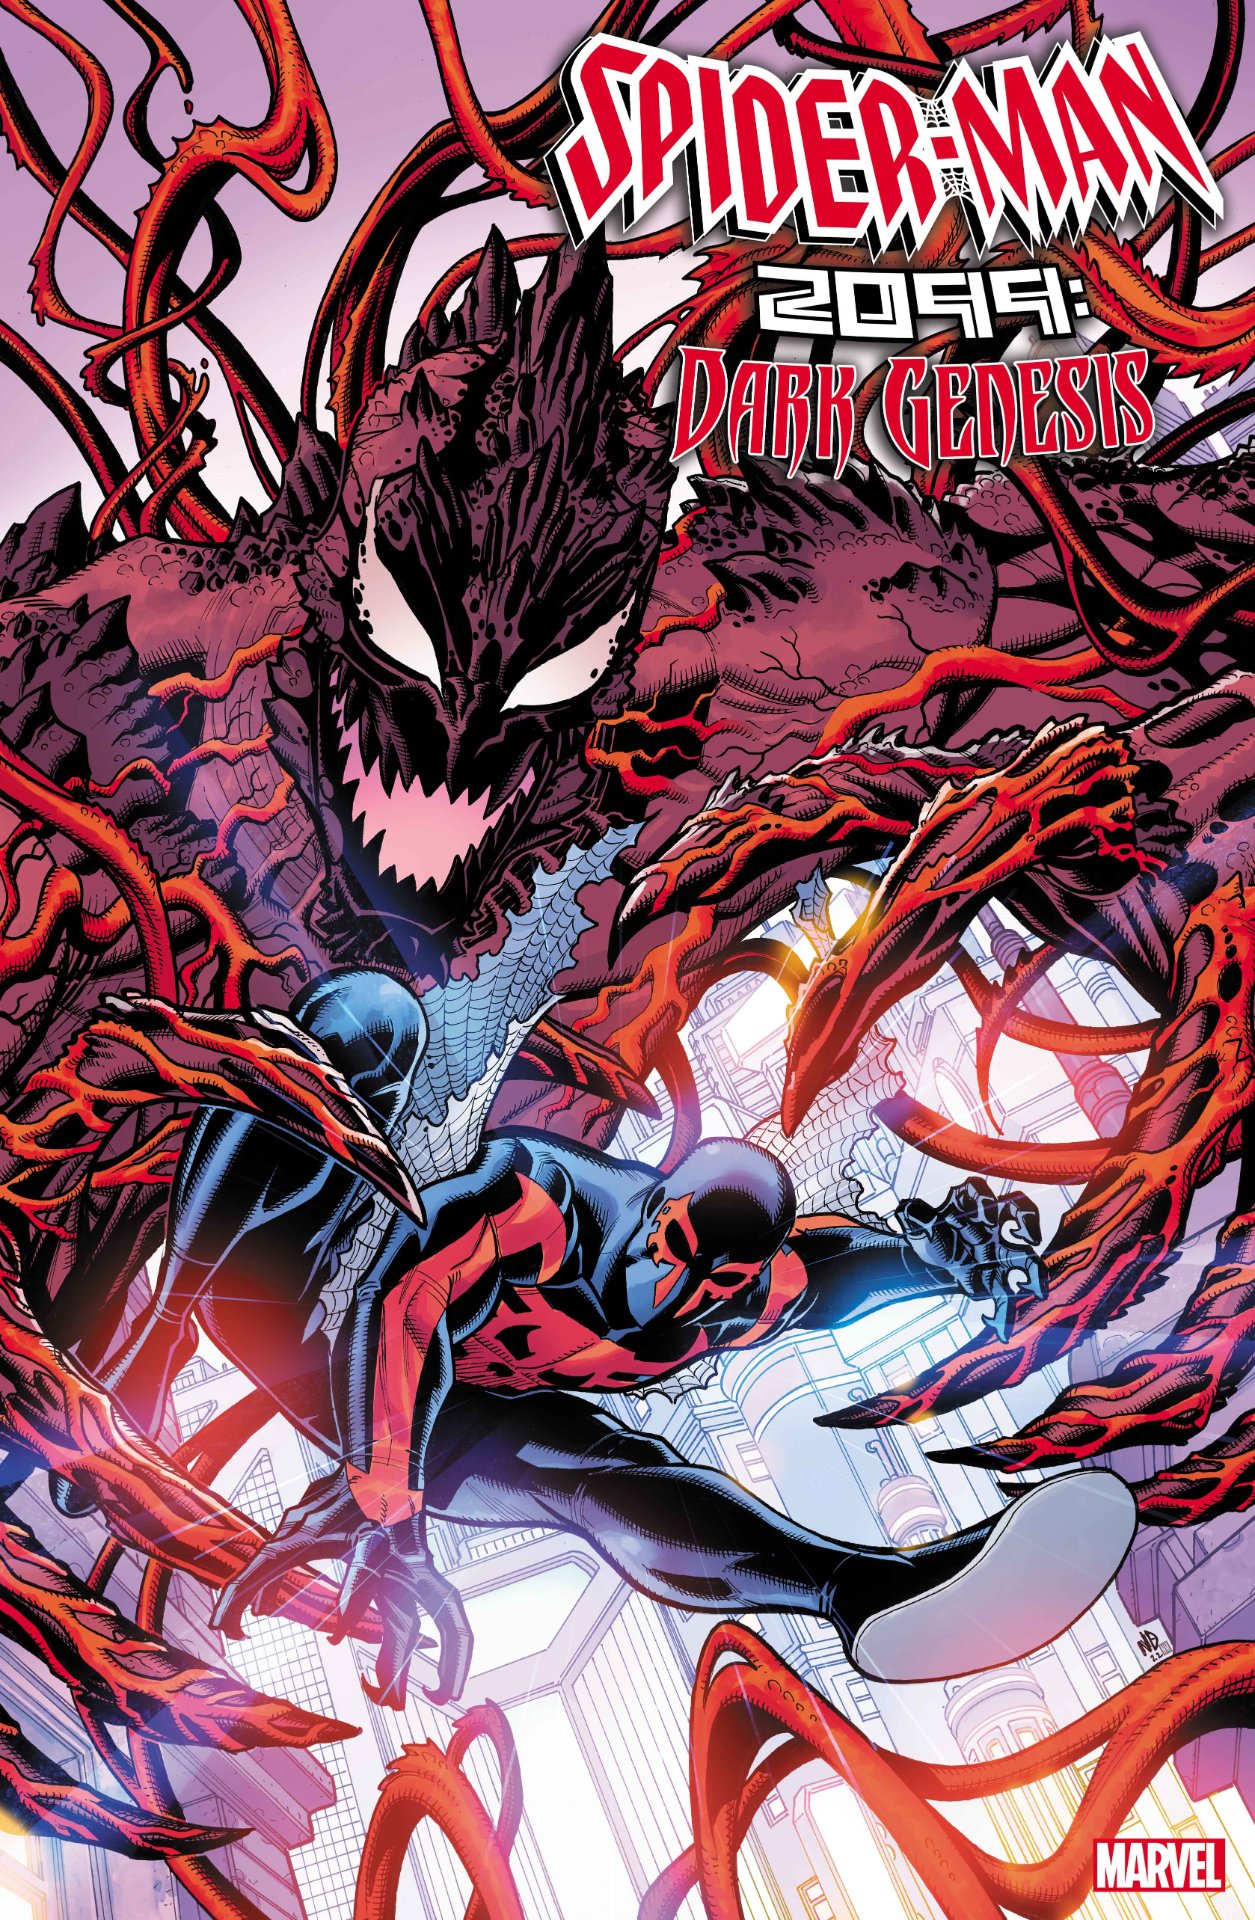 Portada de Spider-Man 2099: Dark Genesis #1